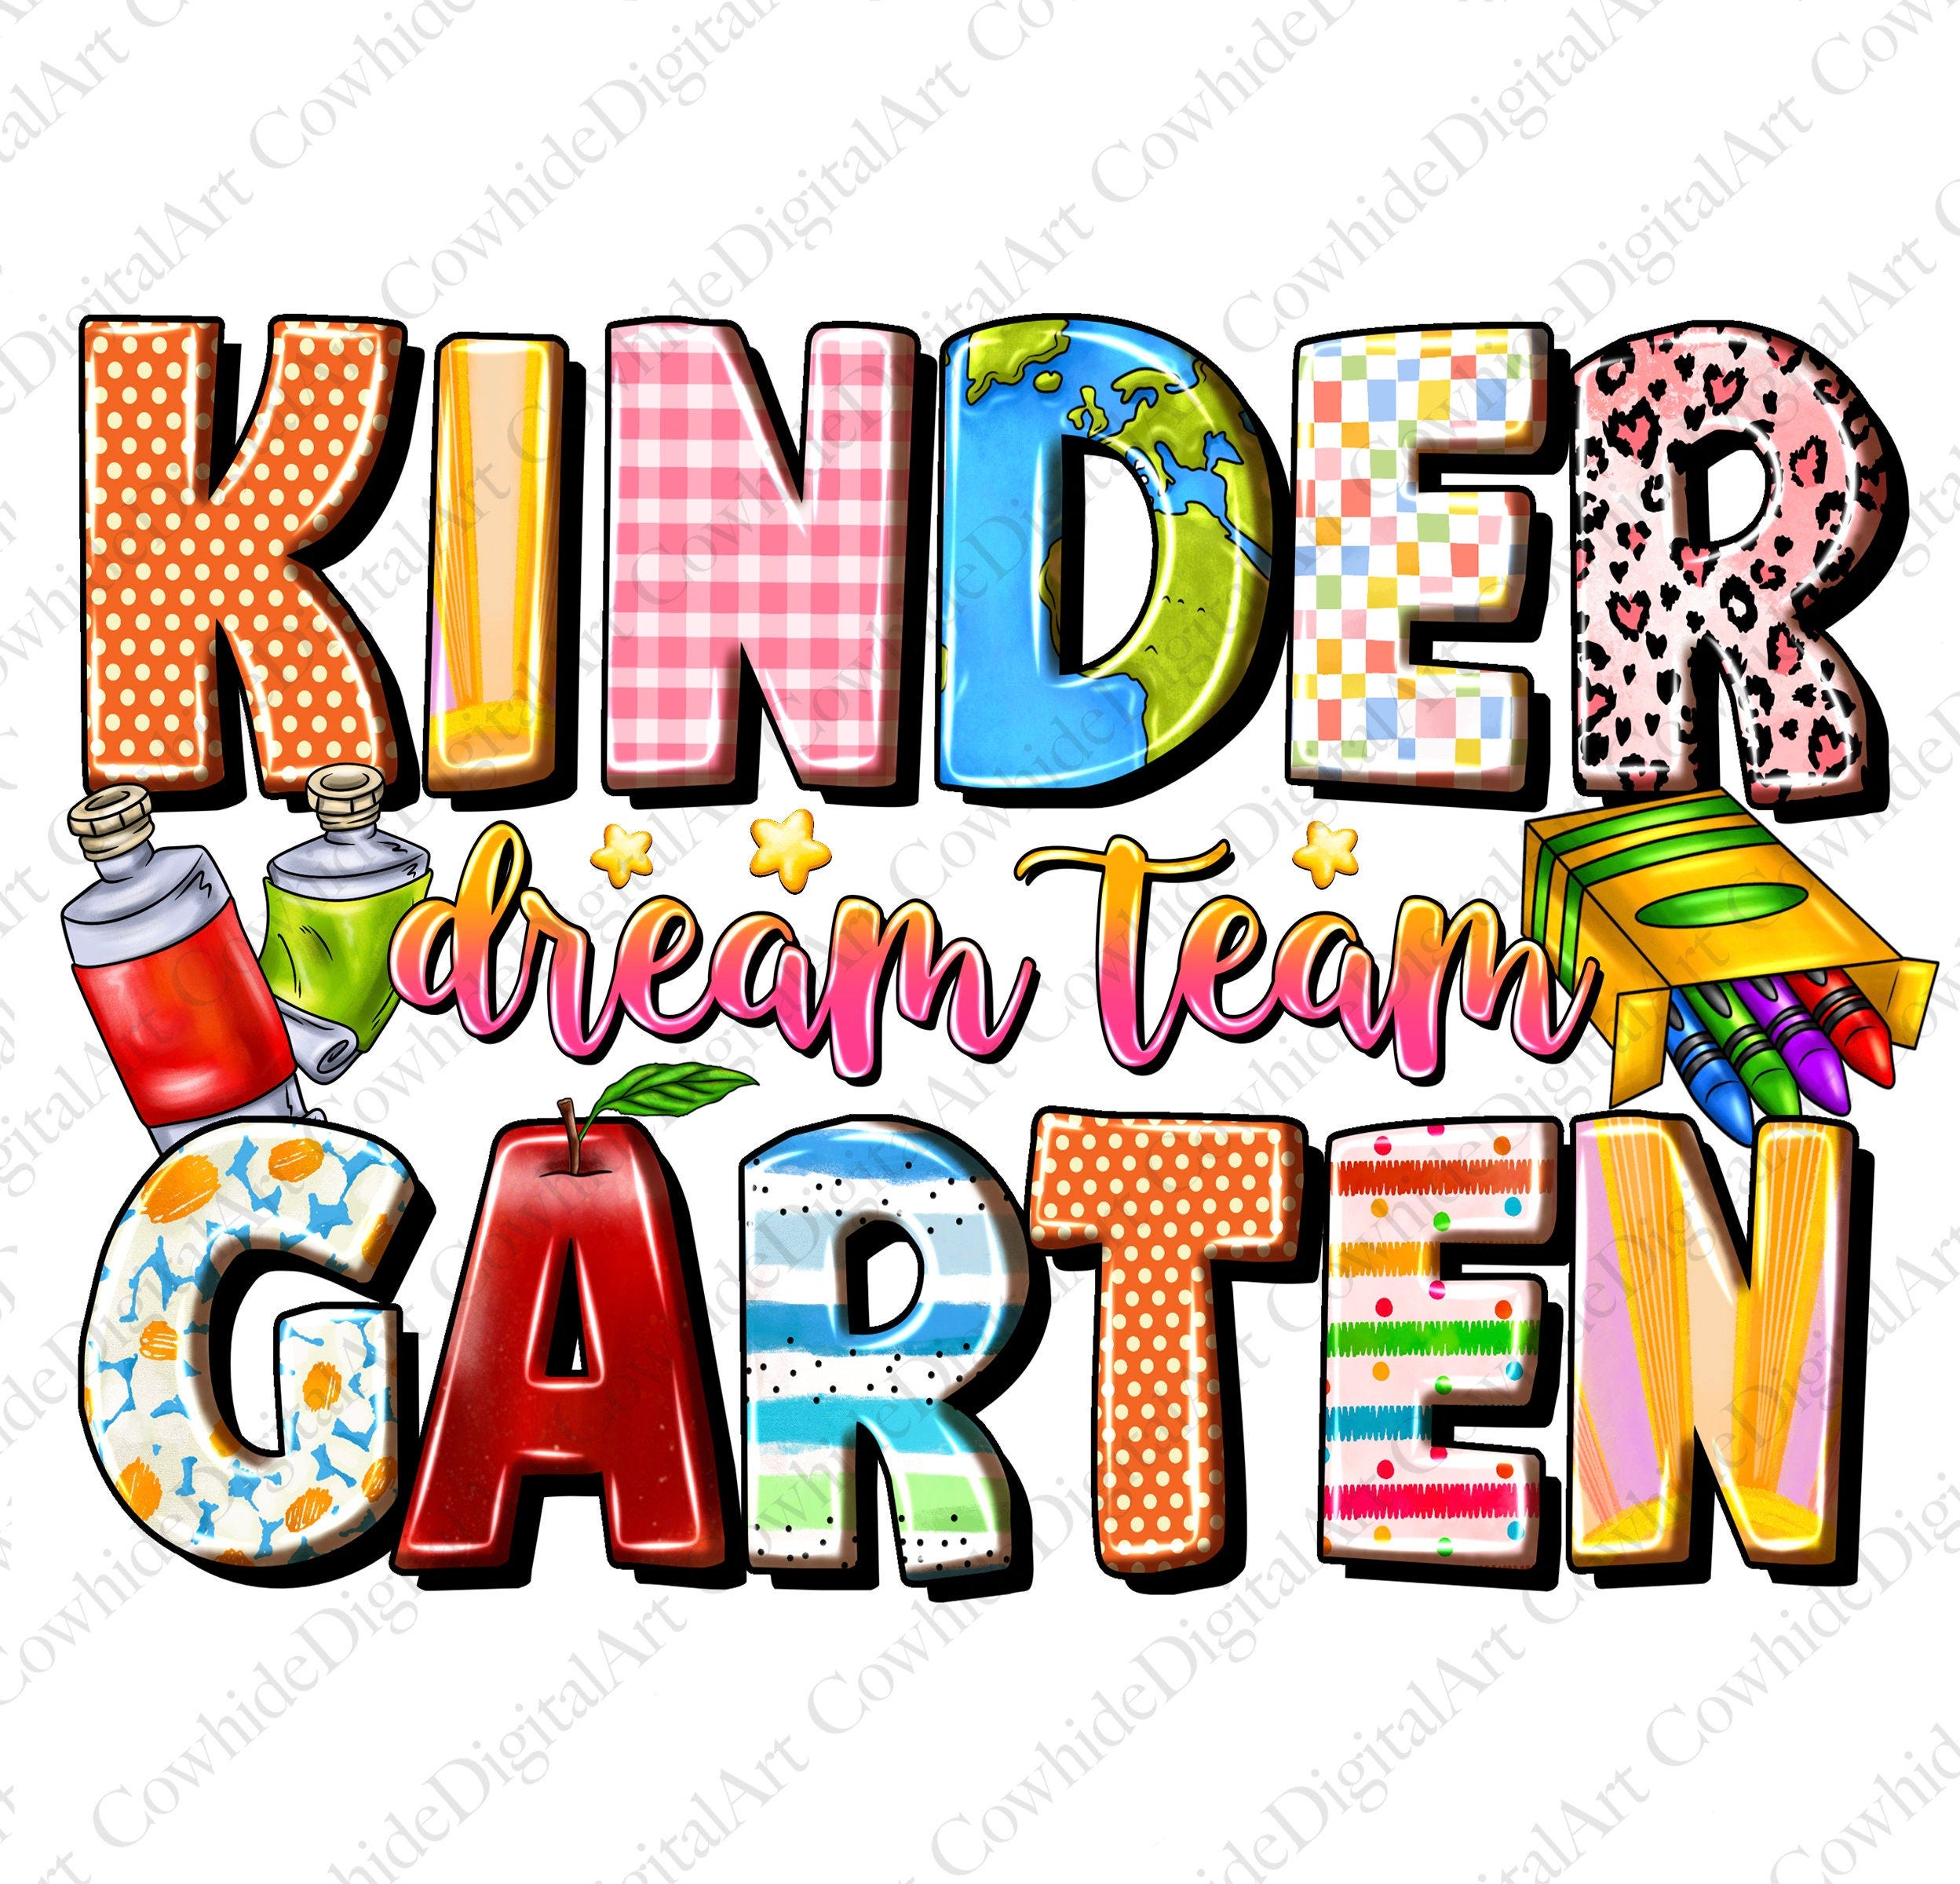 Kindergarten Teacher png sublimation design, Dream Team png, Kindergarten Teacher png, Kindergarten png, sublimate designs download, Western